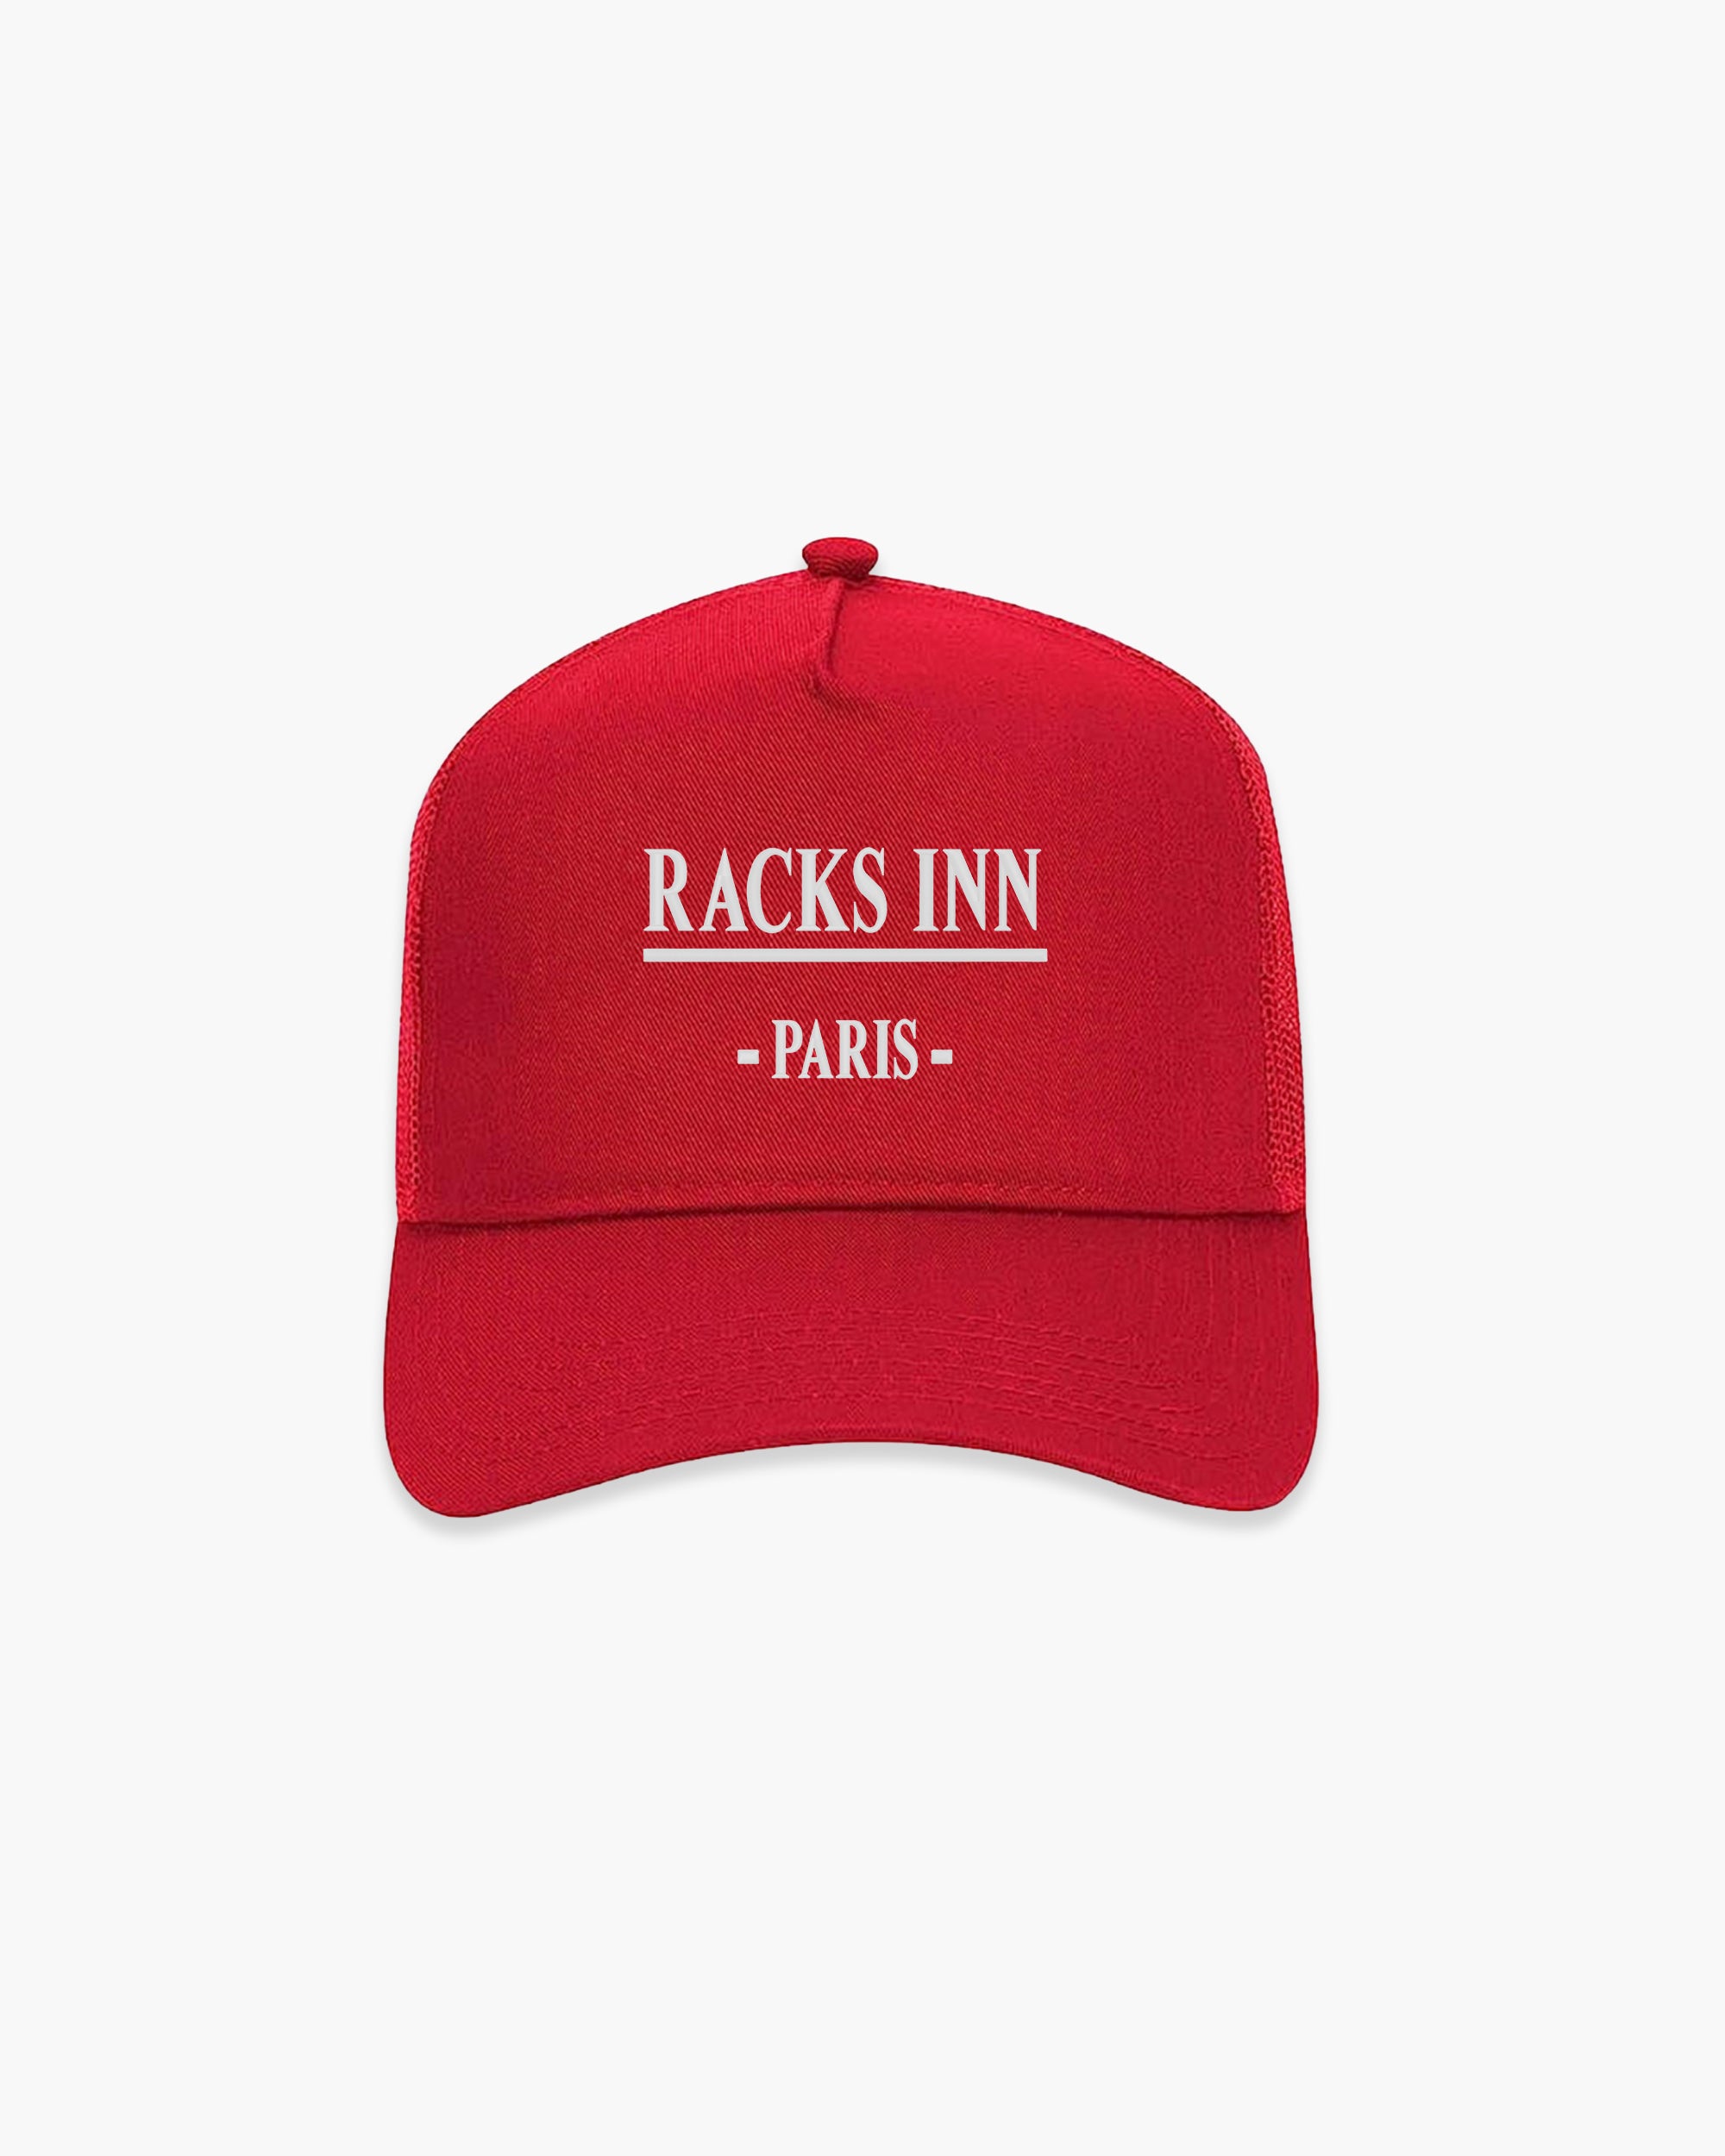 Paris Trucker Hat - Red